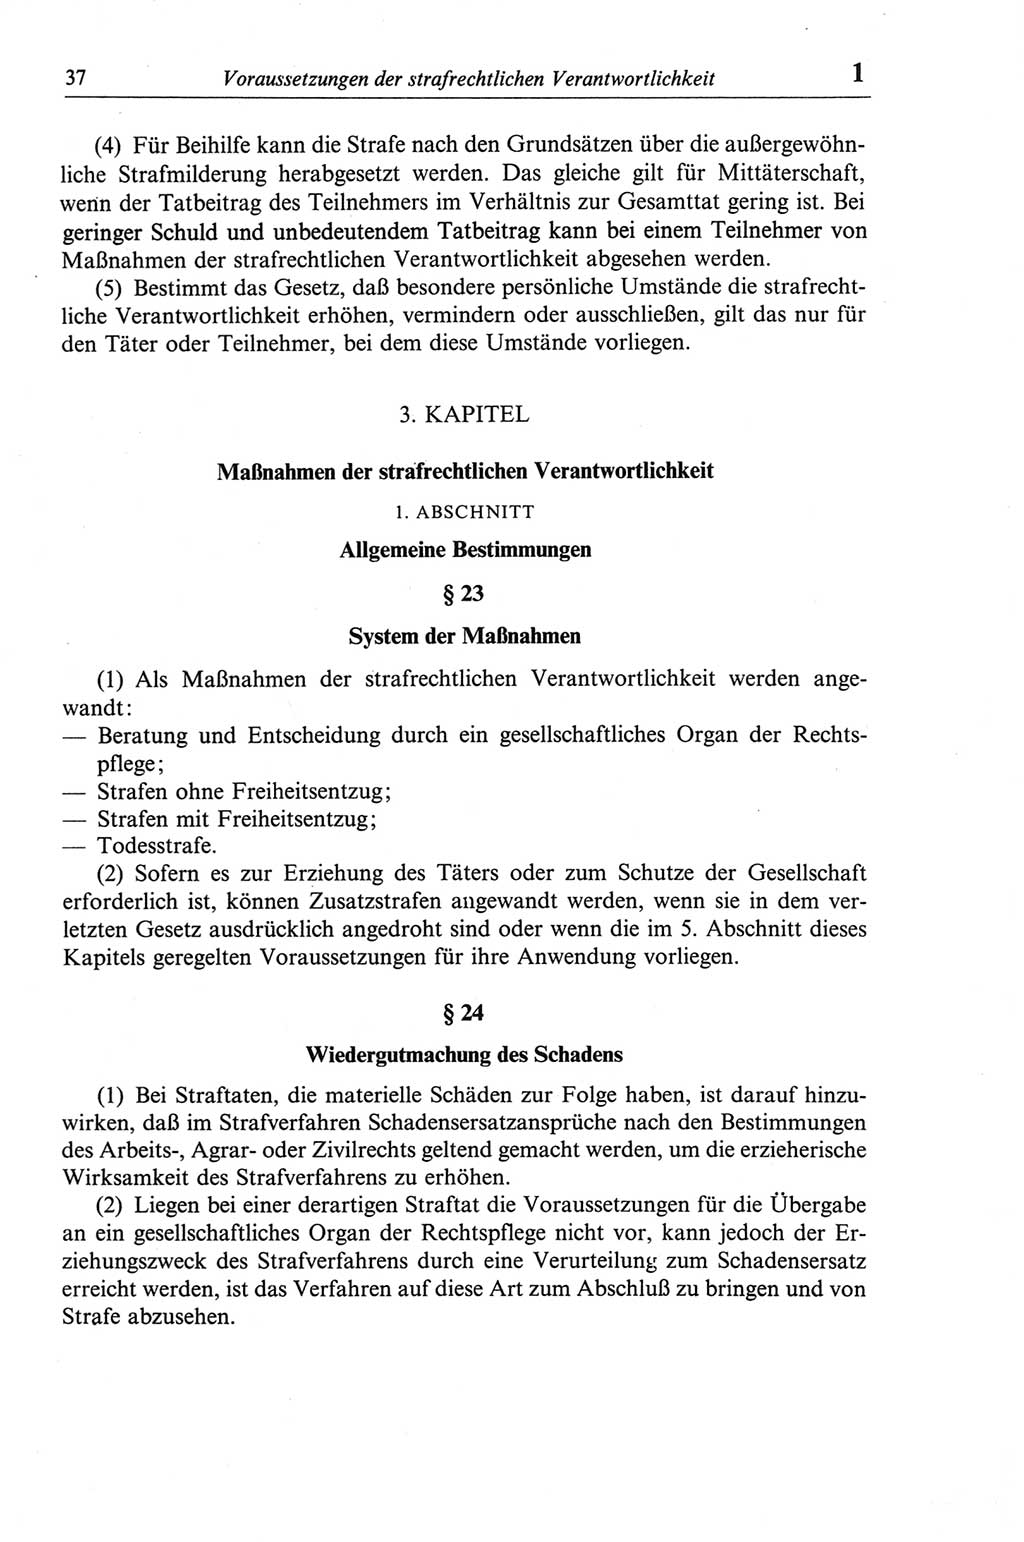 Strafgesetzbuch (StGB) der Deutschen Demokratischen Republik (DDR) und angrenzende Gesetze und Bestimmungen 1968, Seite 37 (StGB Ges. Best. DDR 1968, S. 37)